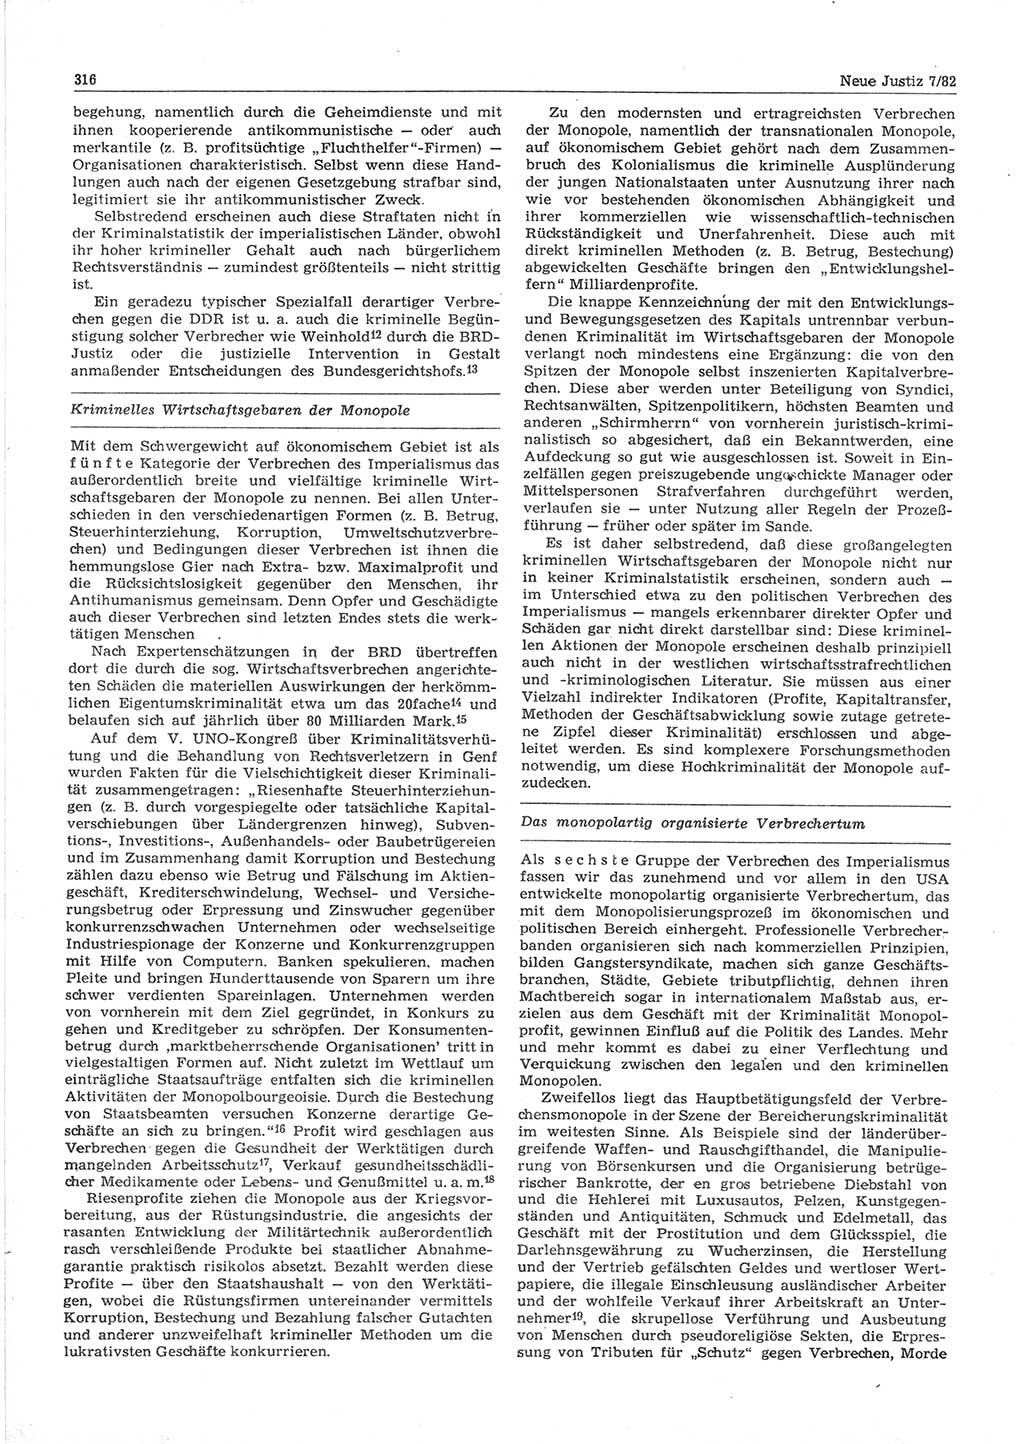 Neue Justiz (NJ), Zeitschrift für sozialistisches Recht und Gesetzlichkeit [Deutsche Demokratische Republik (DDR)], 36. Jahrgang 1982, Seite 316 (NJ DDR 1982, S. 316)